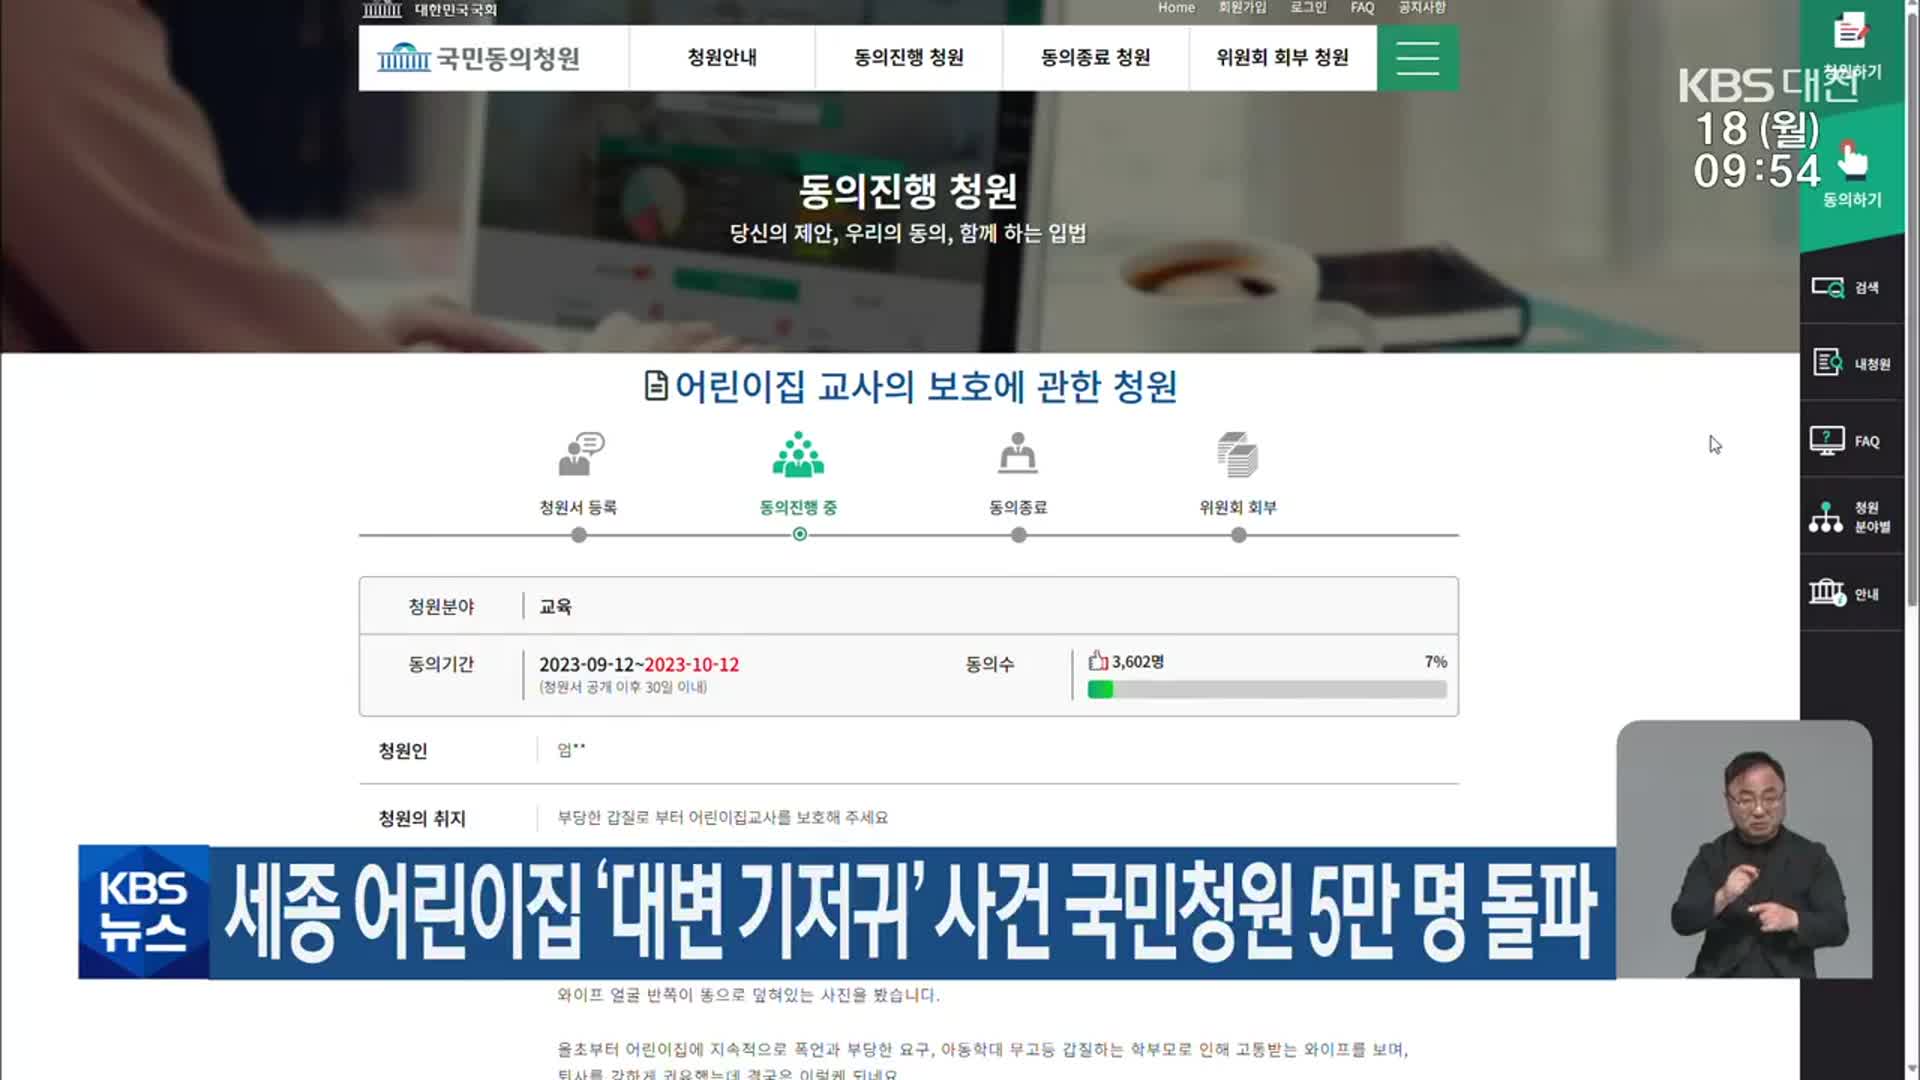 세종 어린이집 ‘대변 기저귀’ 사건 국민청원 5만 명 돌파